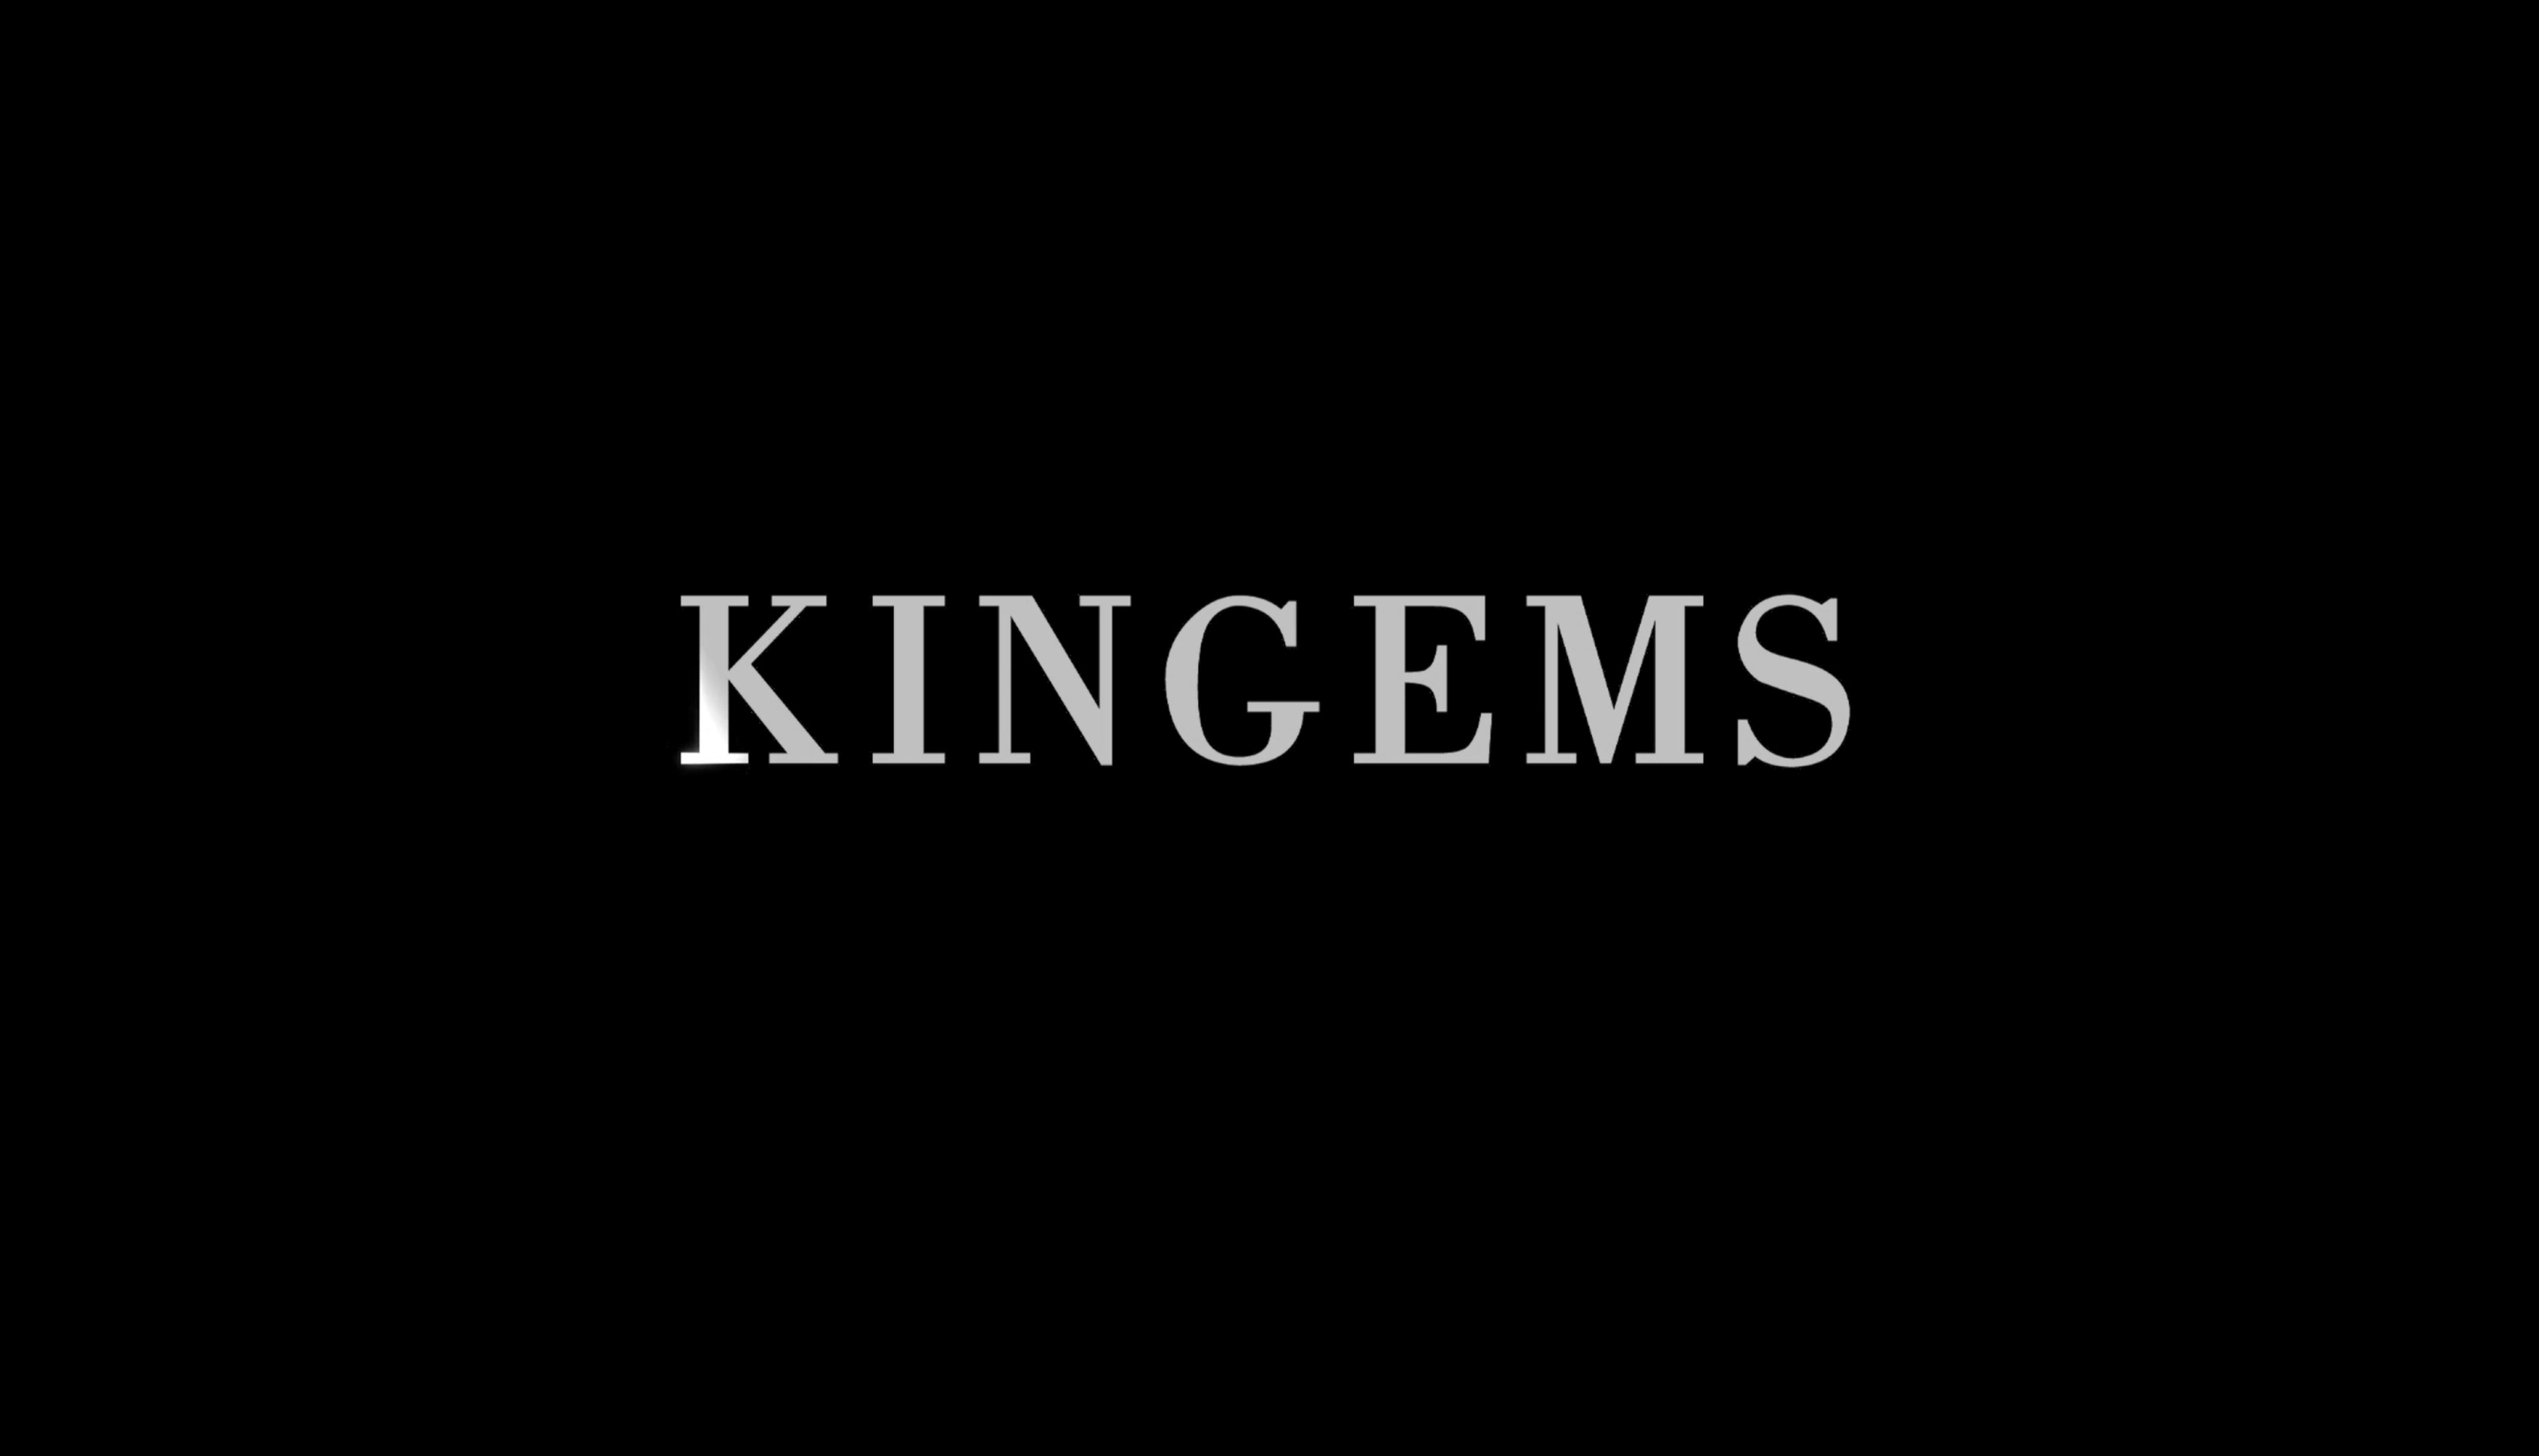 KINGEMS - 彩色版 